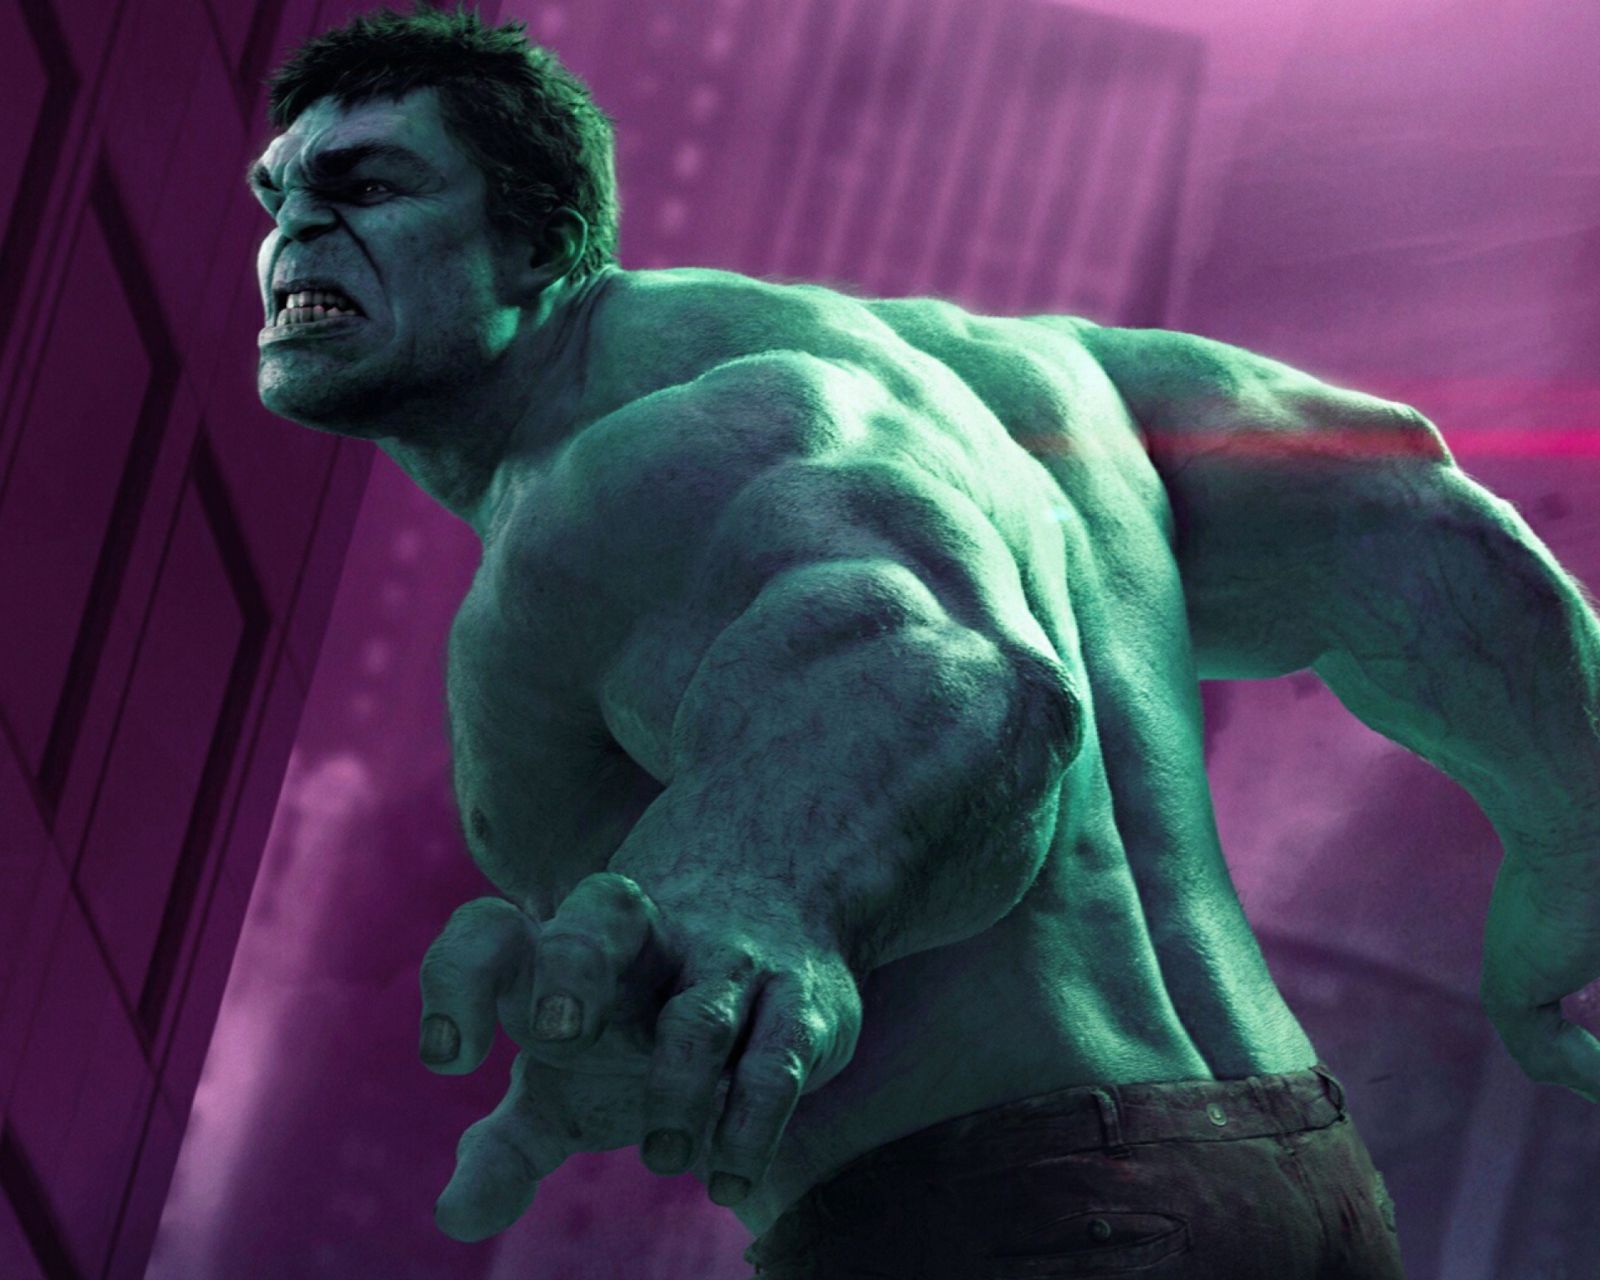 Sfondi Hulk - The Avengers 2012 1600x1280